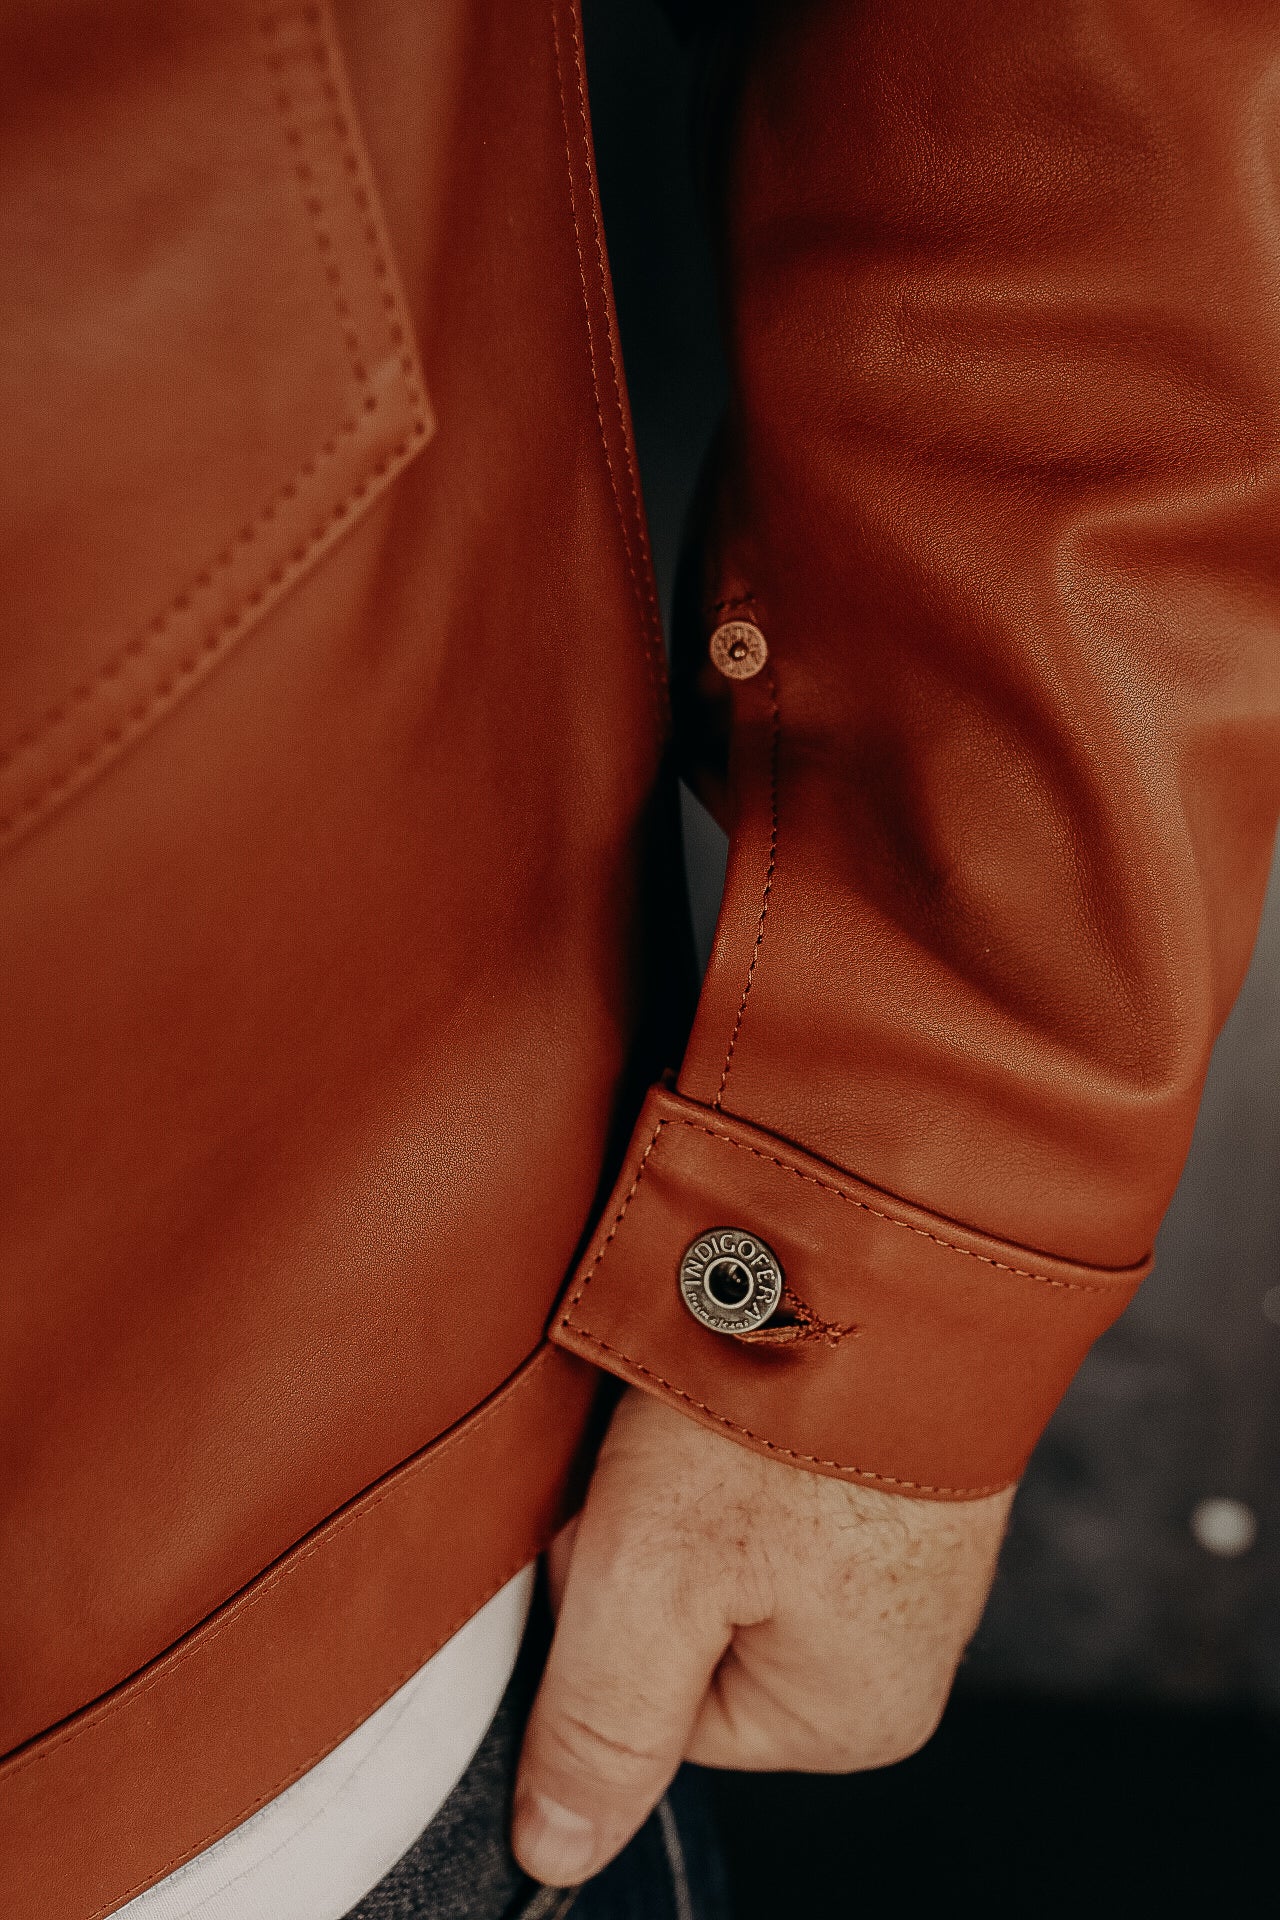 Grant Jacket- Cognac Leather